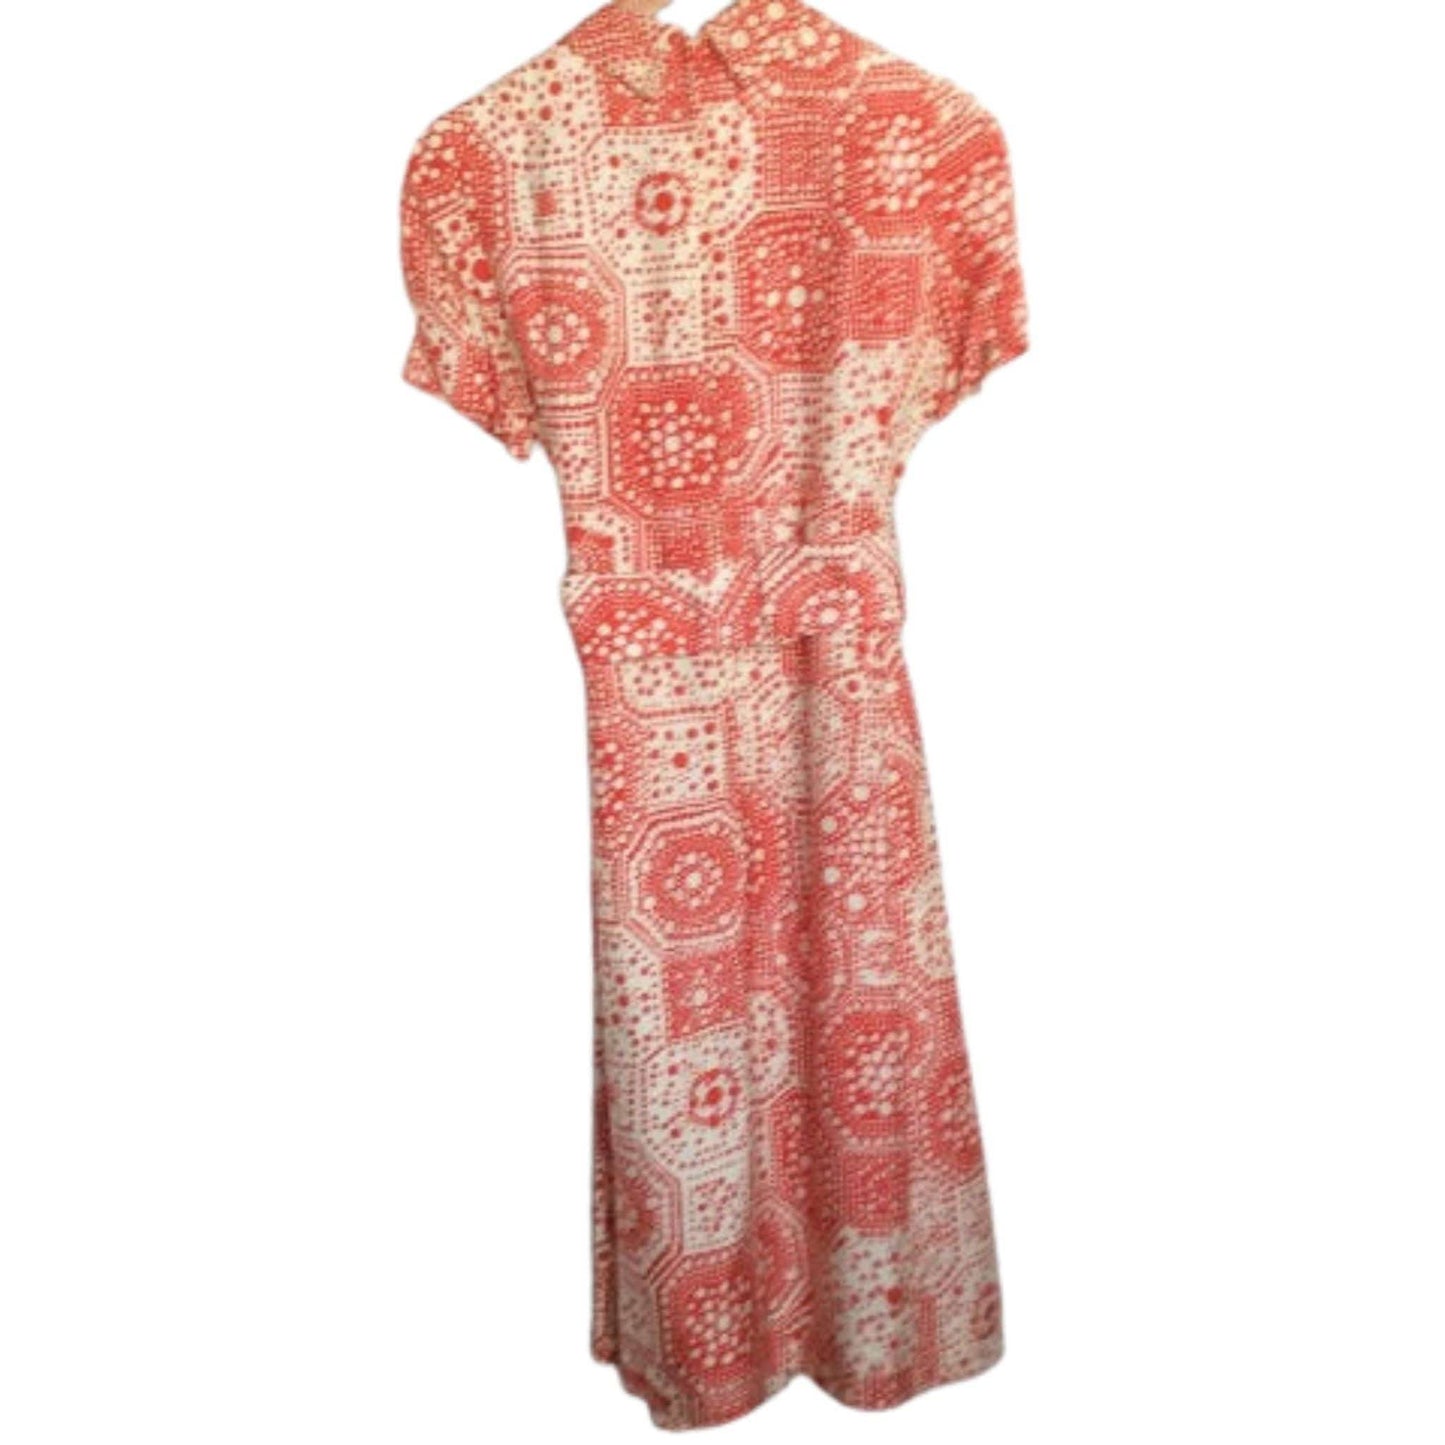 Abe Schrader Silk Dress Suit Medium / Multi / Vintage 1960s